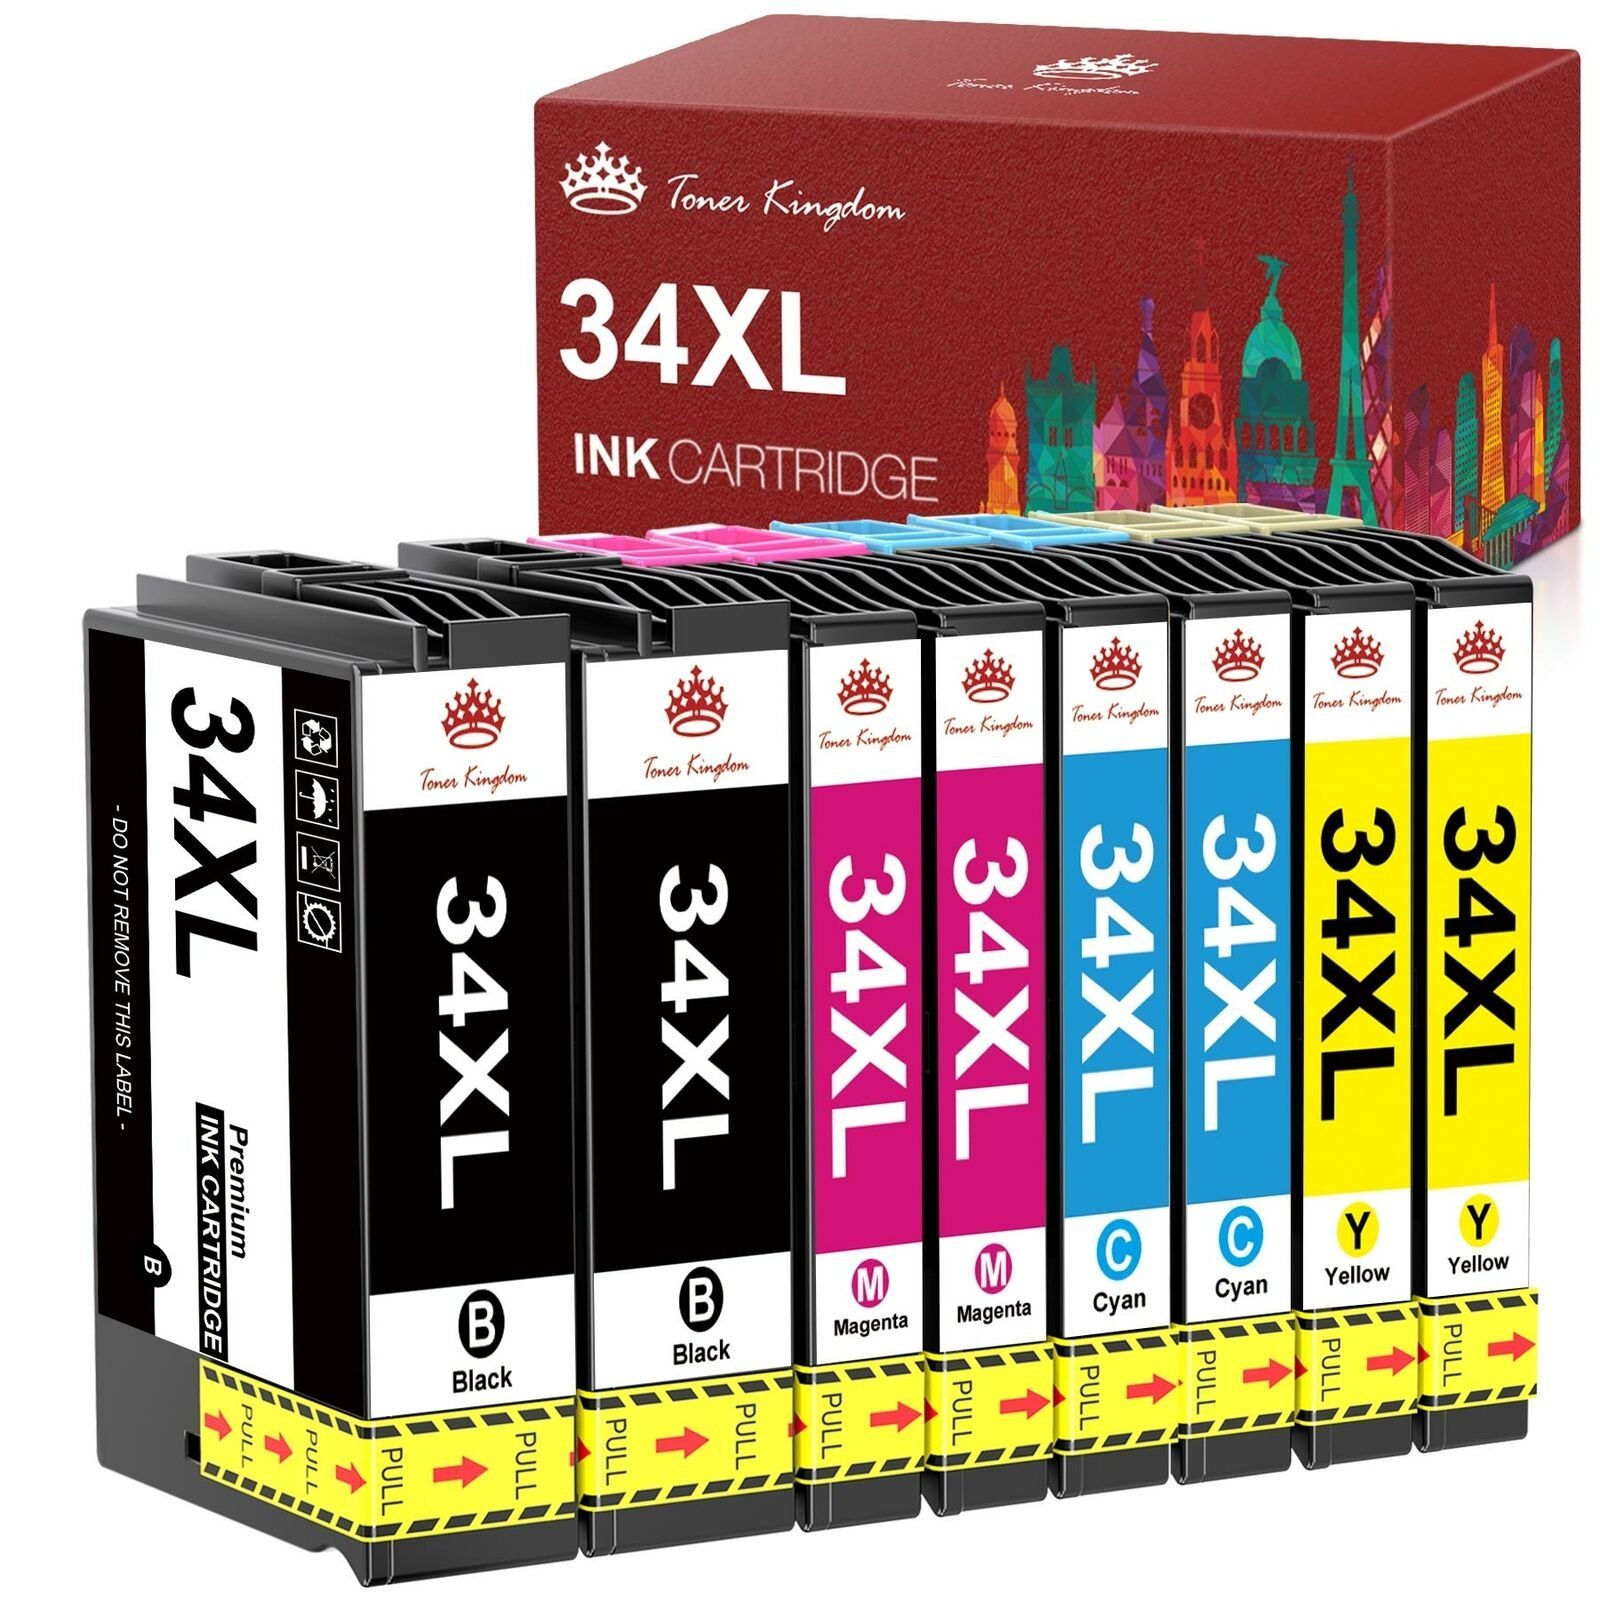 Toner Kingdom für EPSON 34 XL 34XL Multipack WF-3720 3725 Tintenpatrone Schwarz, Cyan, Magenta, Gelb-2 Schwarz, 2 Cyan, 2 Magenta, 2 Gelb